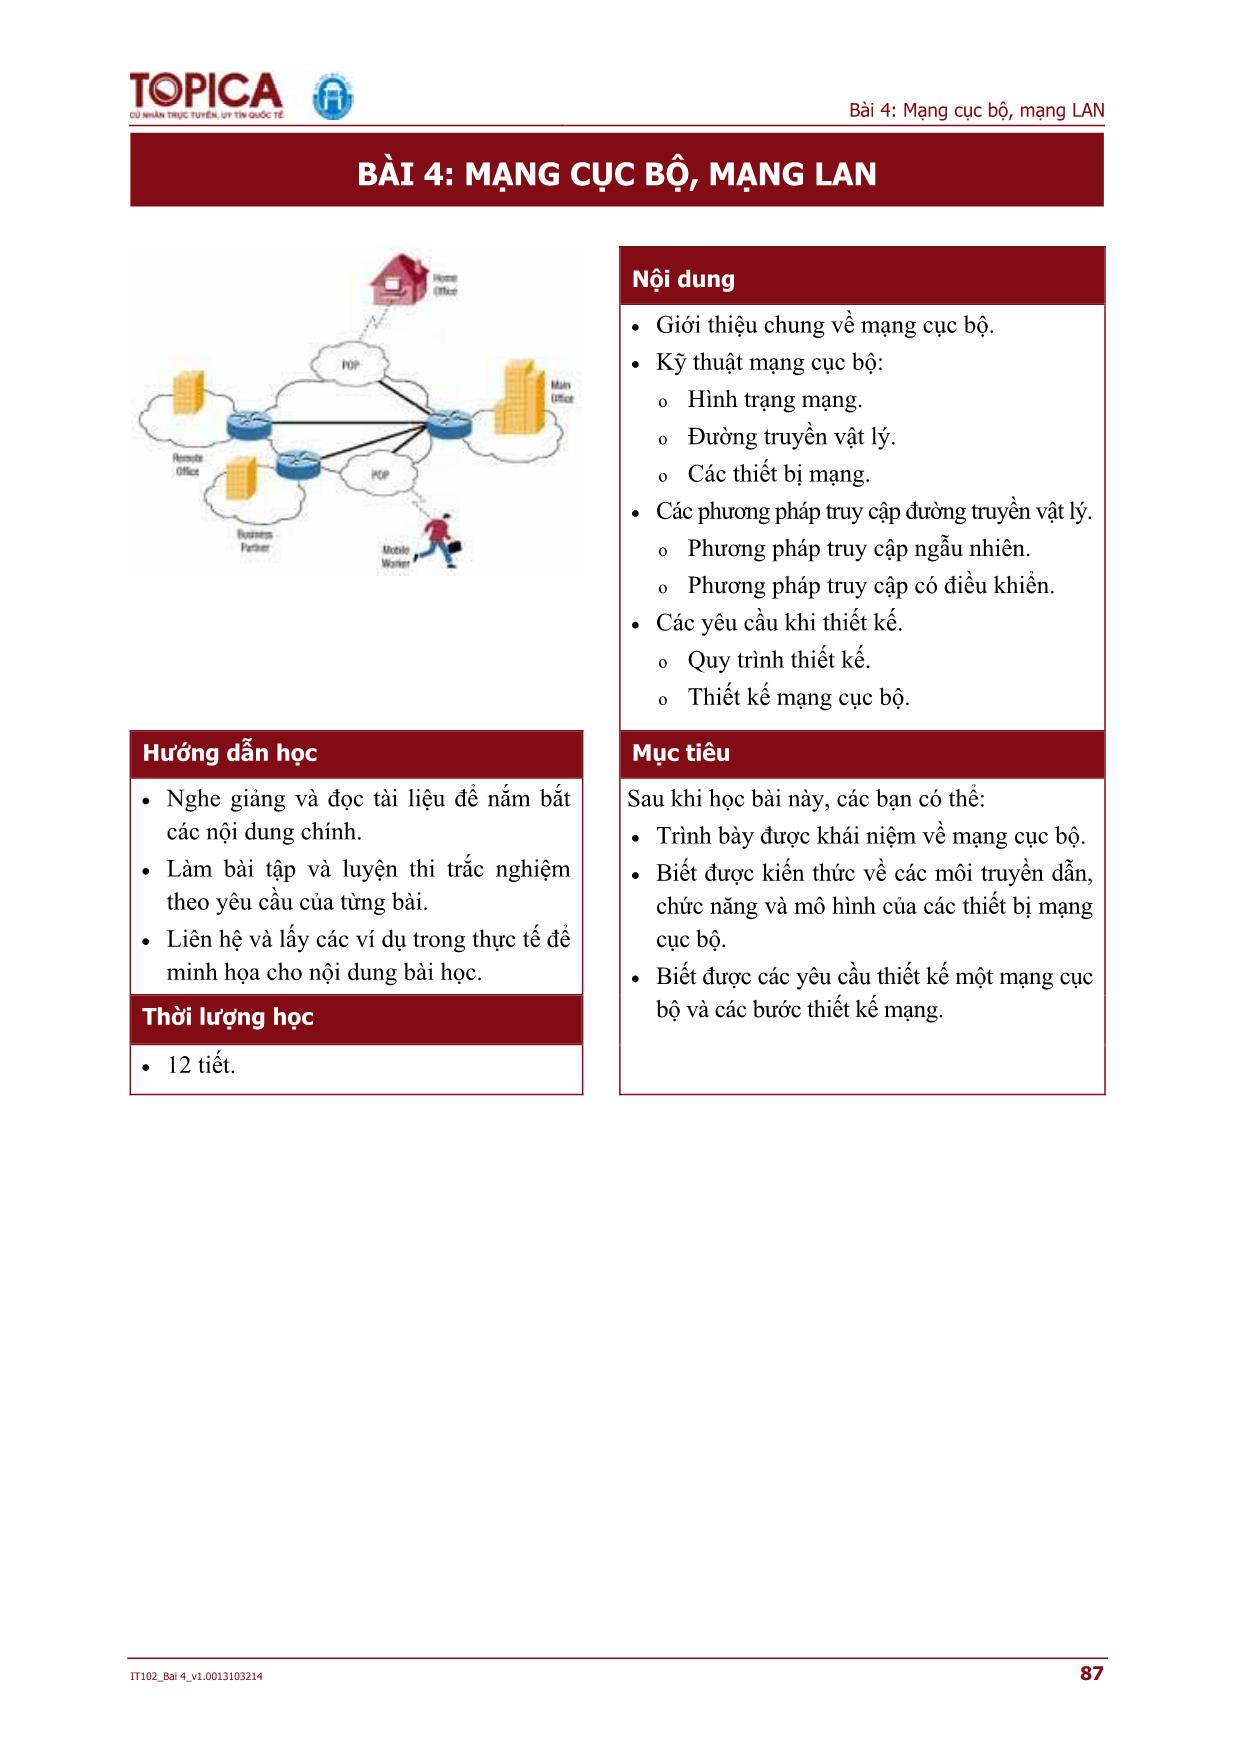 Bài giảng Mạng căn bản - Bài 4: Mạng cục bộ, mạng LAN trang 1